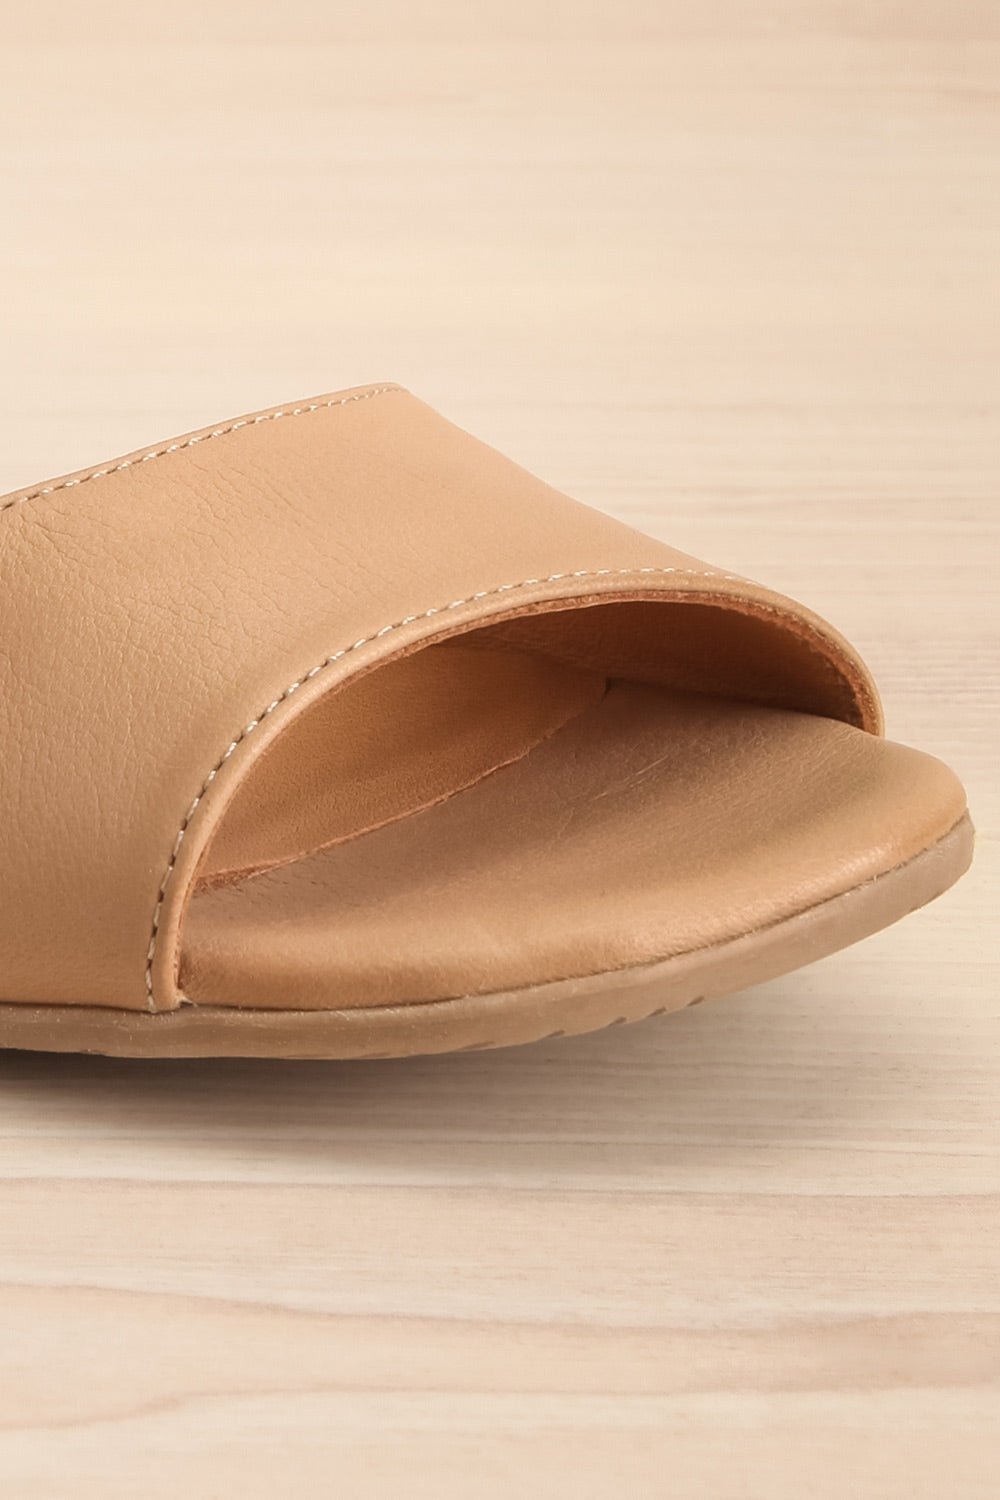 Chiesa Taupe Asymmetrical Leather Sandals | La petite garçonne front close-up